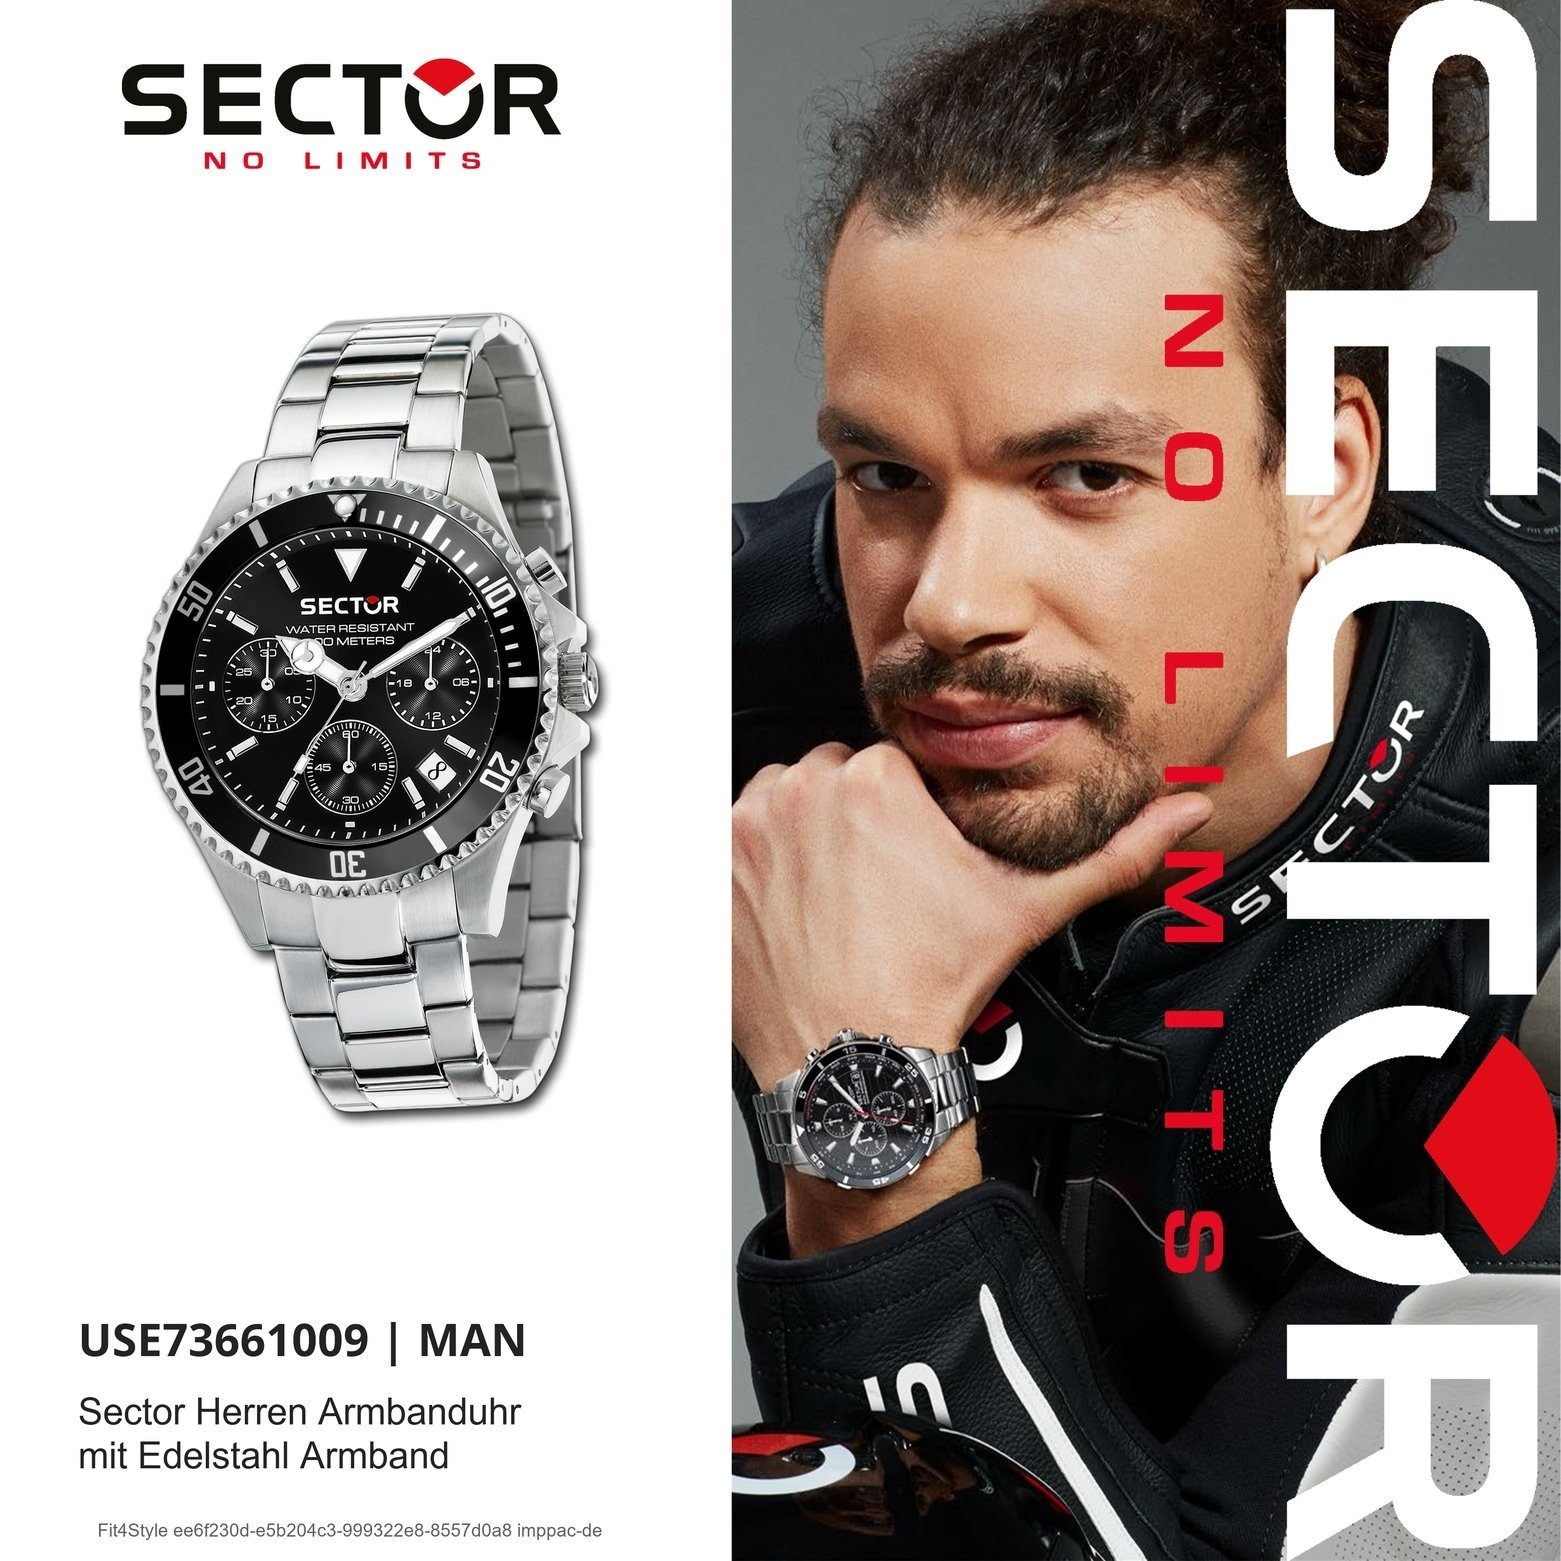 Chrono, Armbanduhr Edelstahlarmband Sector Herren Fashion silber, groß Chronograph Sector (42mm), Herren rund, Armbanduhr